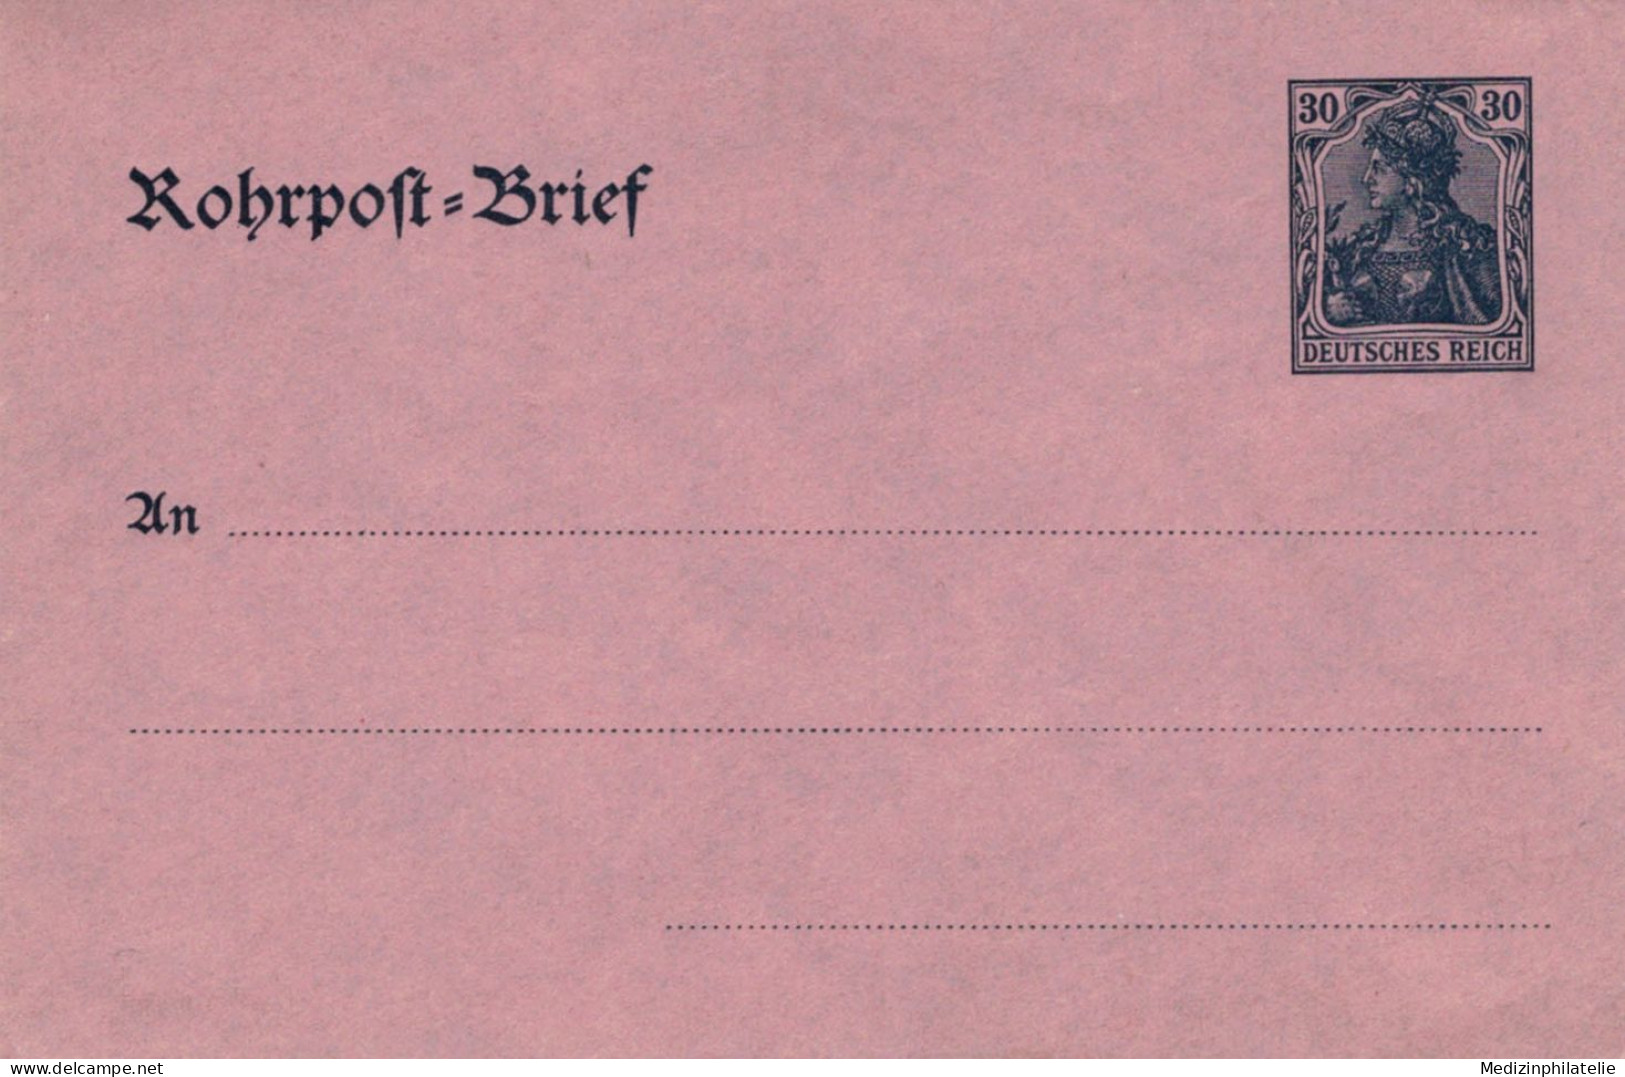 Rohrpost-Brief 30 Pf. Germania Glattes Papier - Ungebraucht - Omslagen